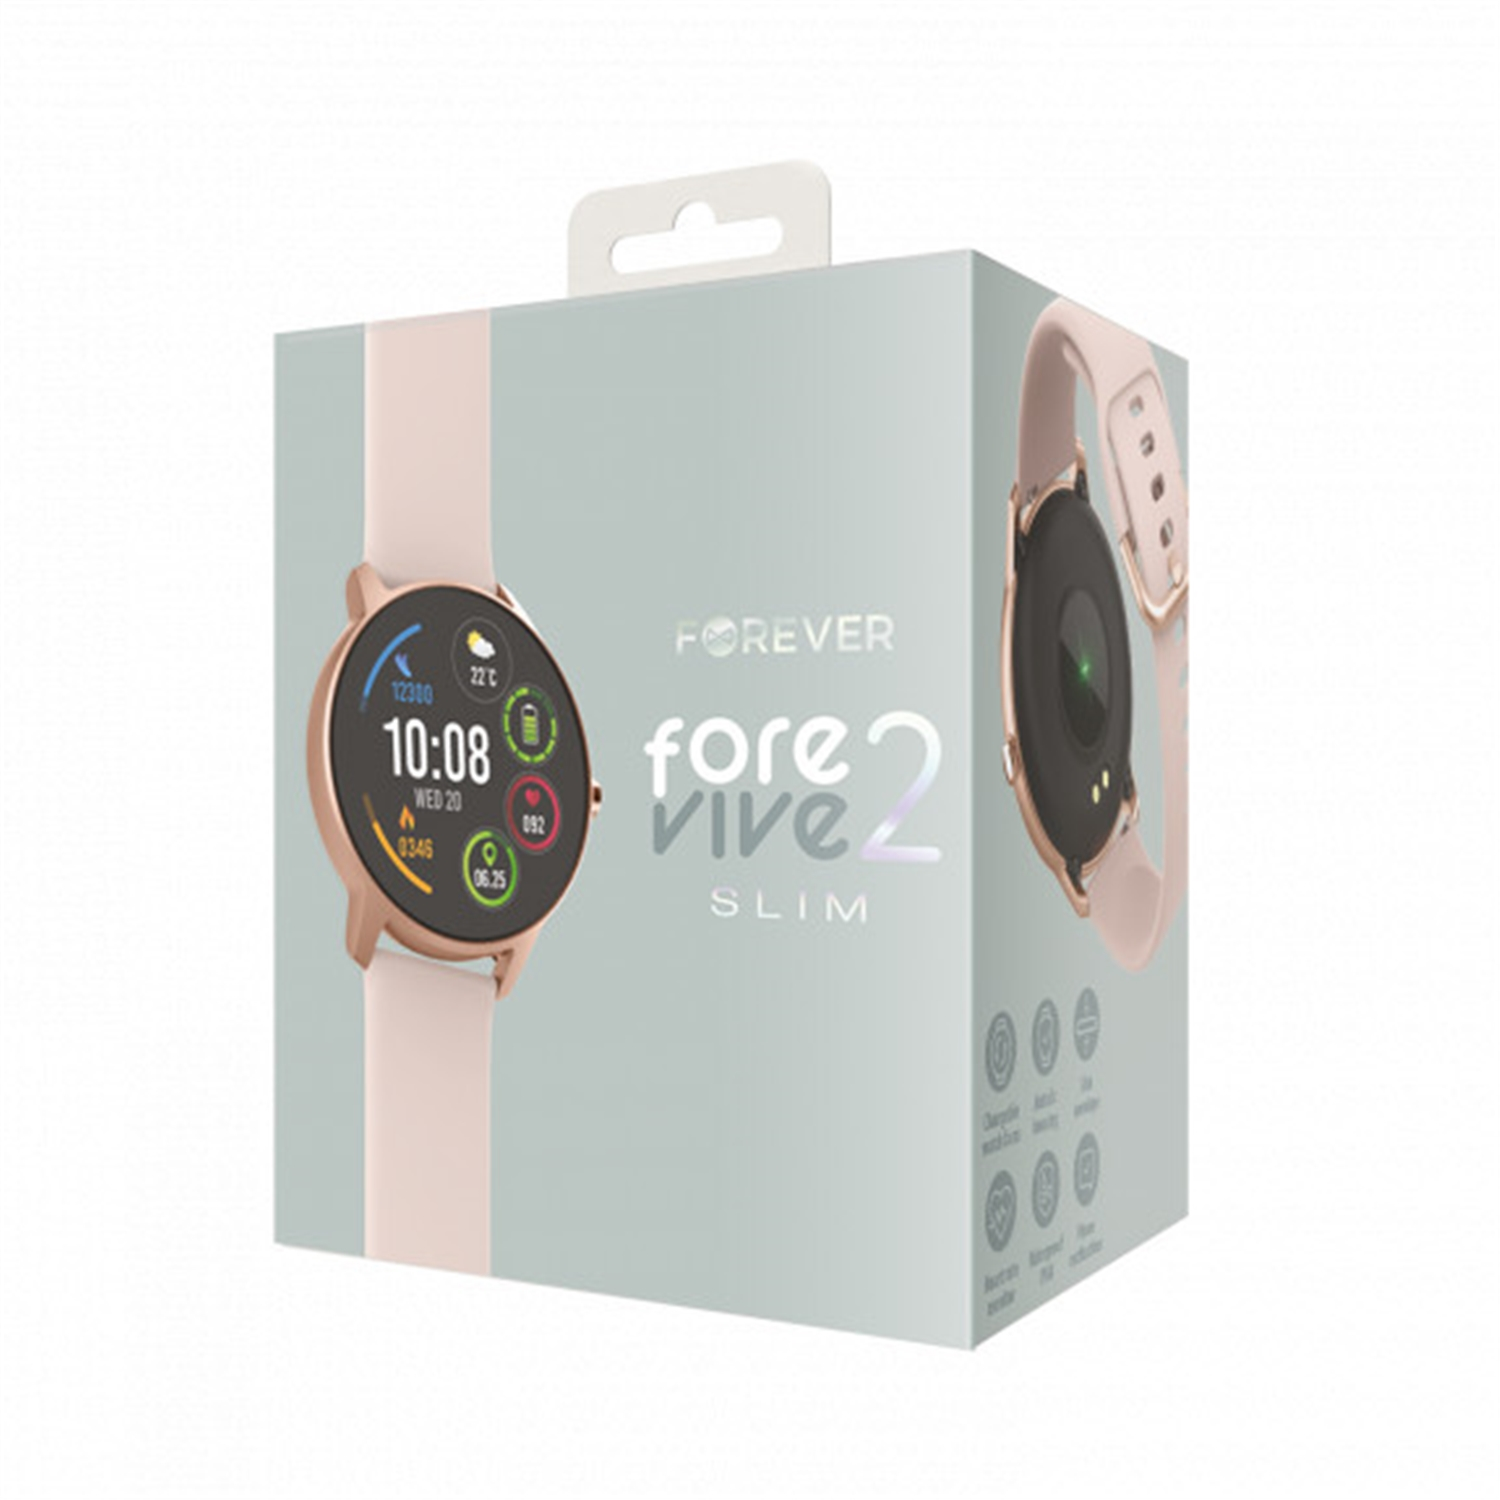 Silikon, Smartwatch Slim SB-326 ForeVive 2 FOREVER Rosa